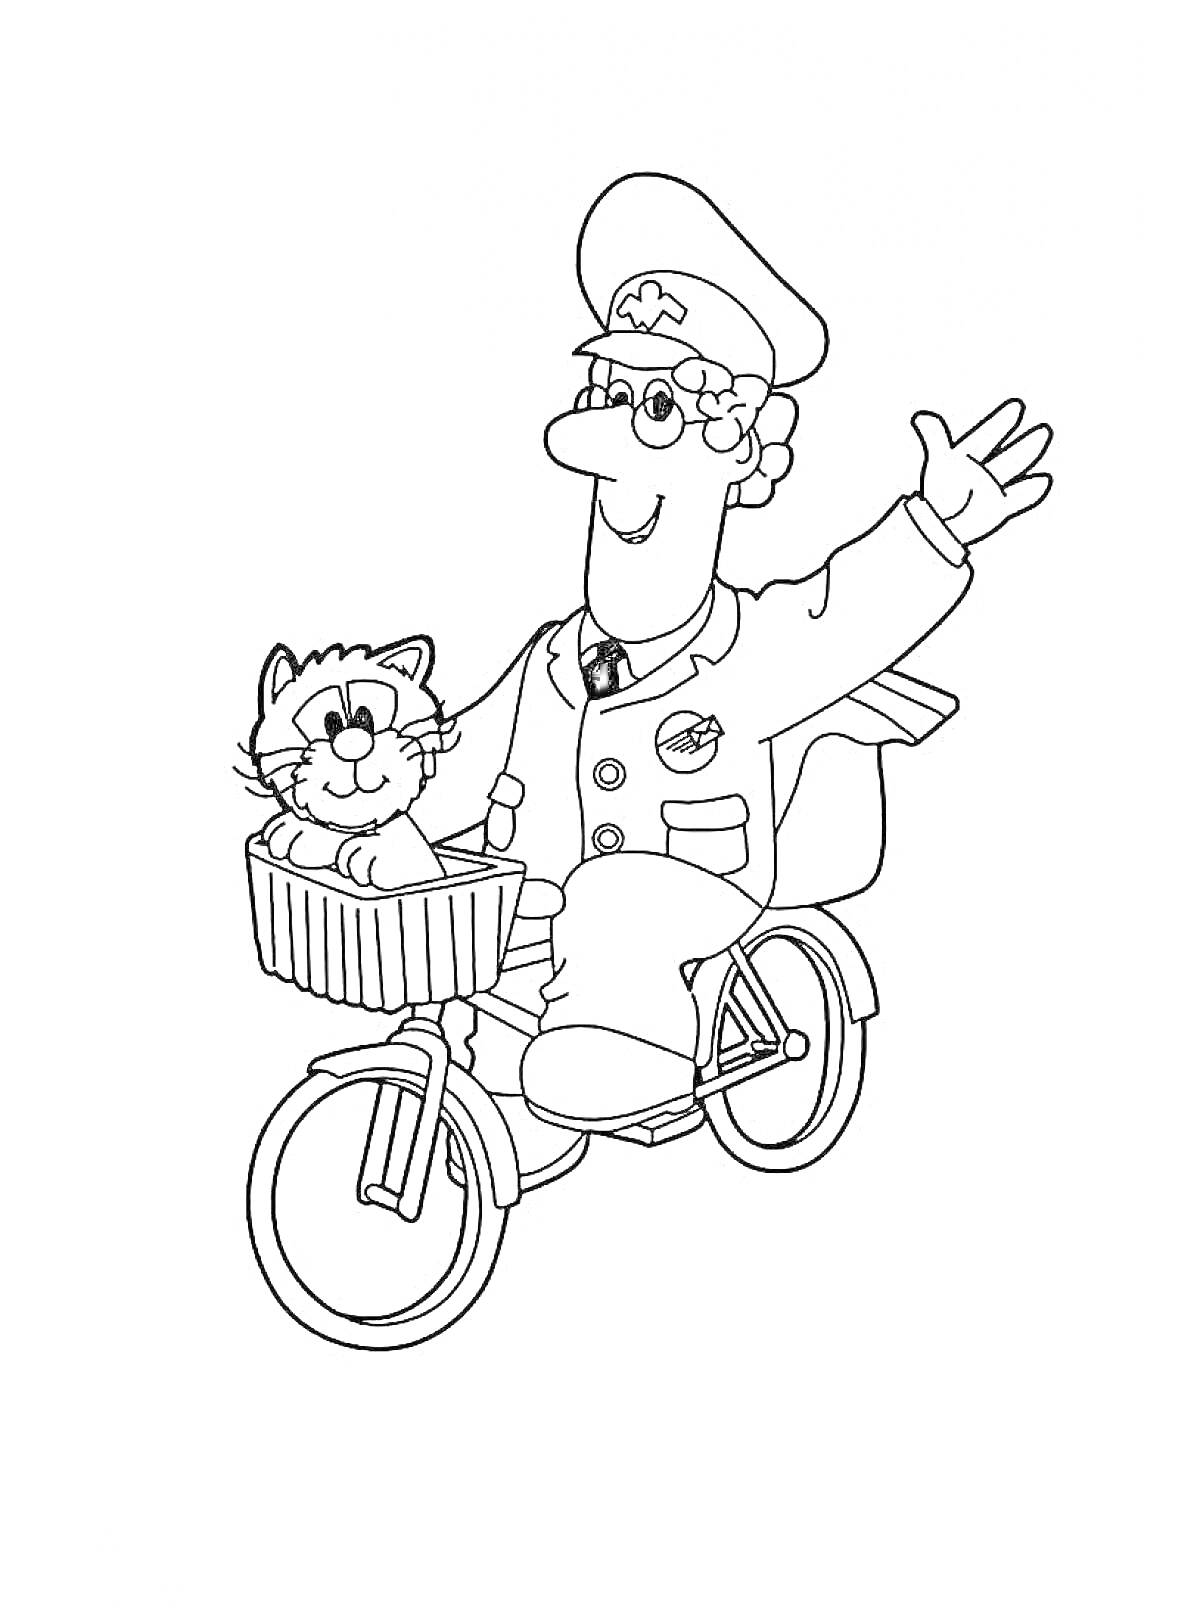 Раскраска Почтальон на велосипеде с котом в корзине